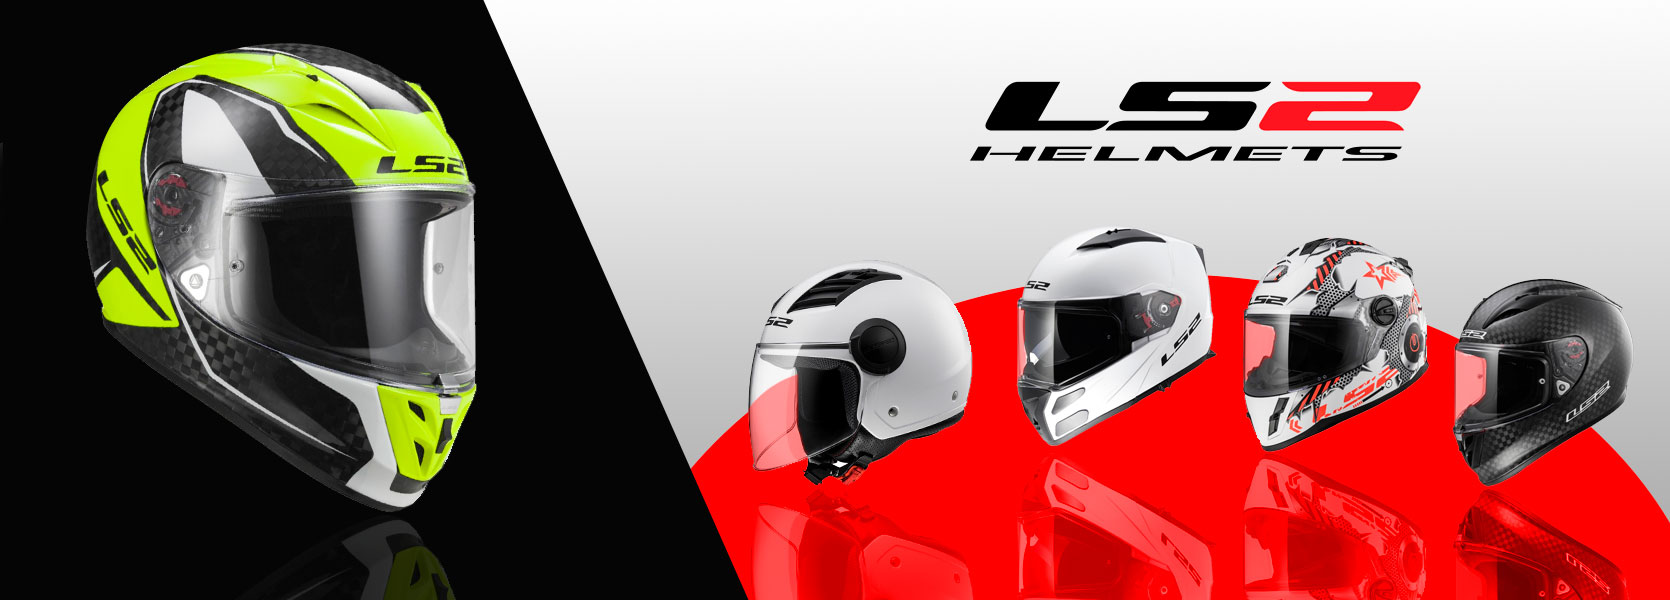 Corrección Reducción de precios Mañana Catálogo LS2 - Amplia gama de cascos excelente relación calidad-precio |  Motoscoot.net